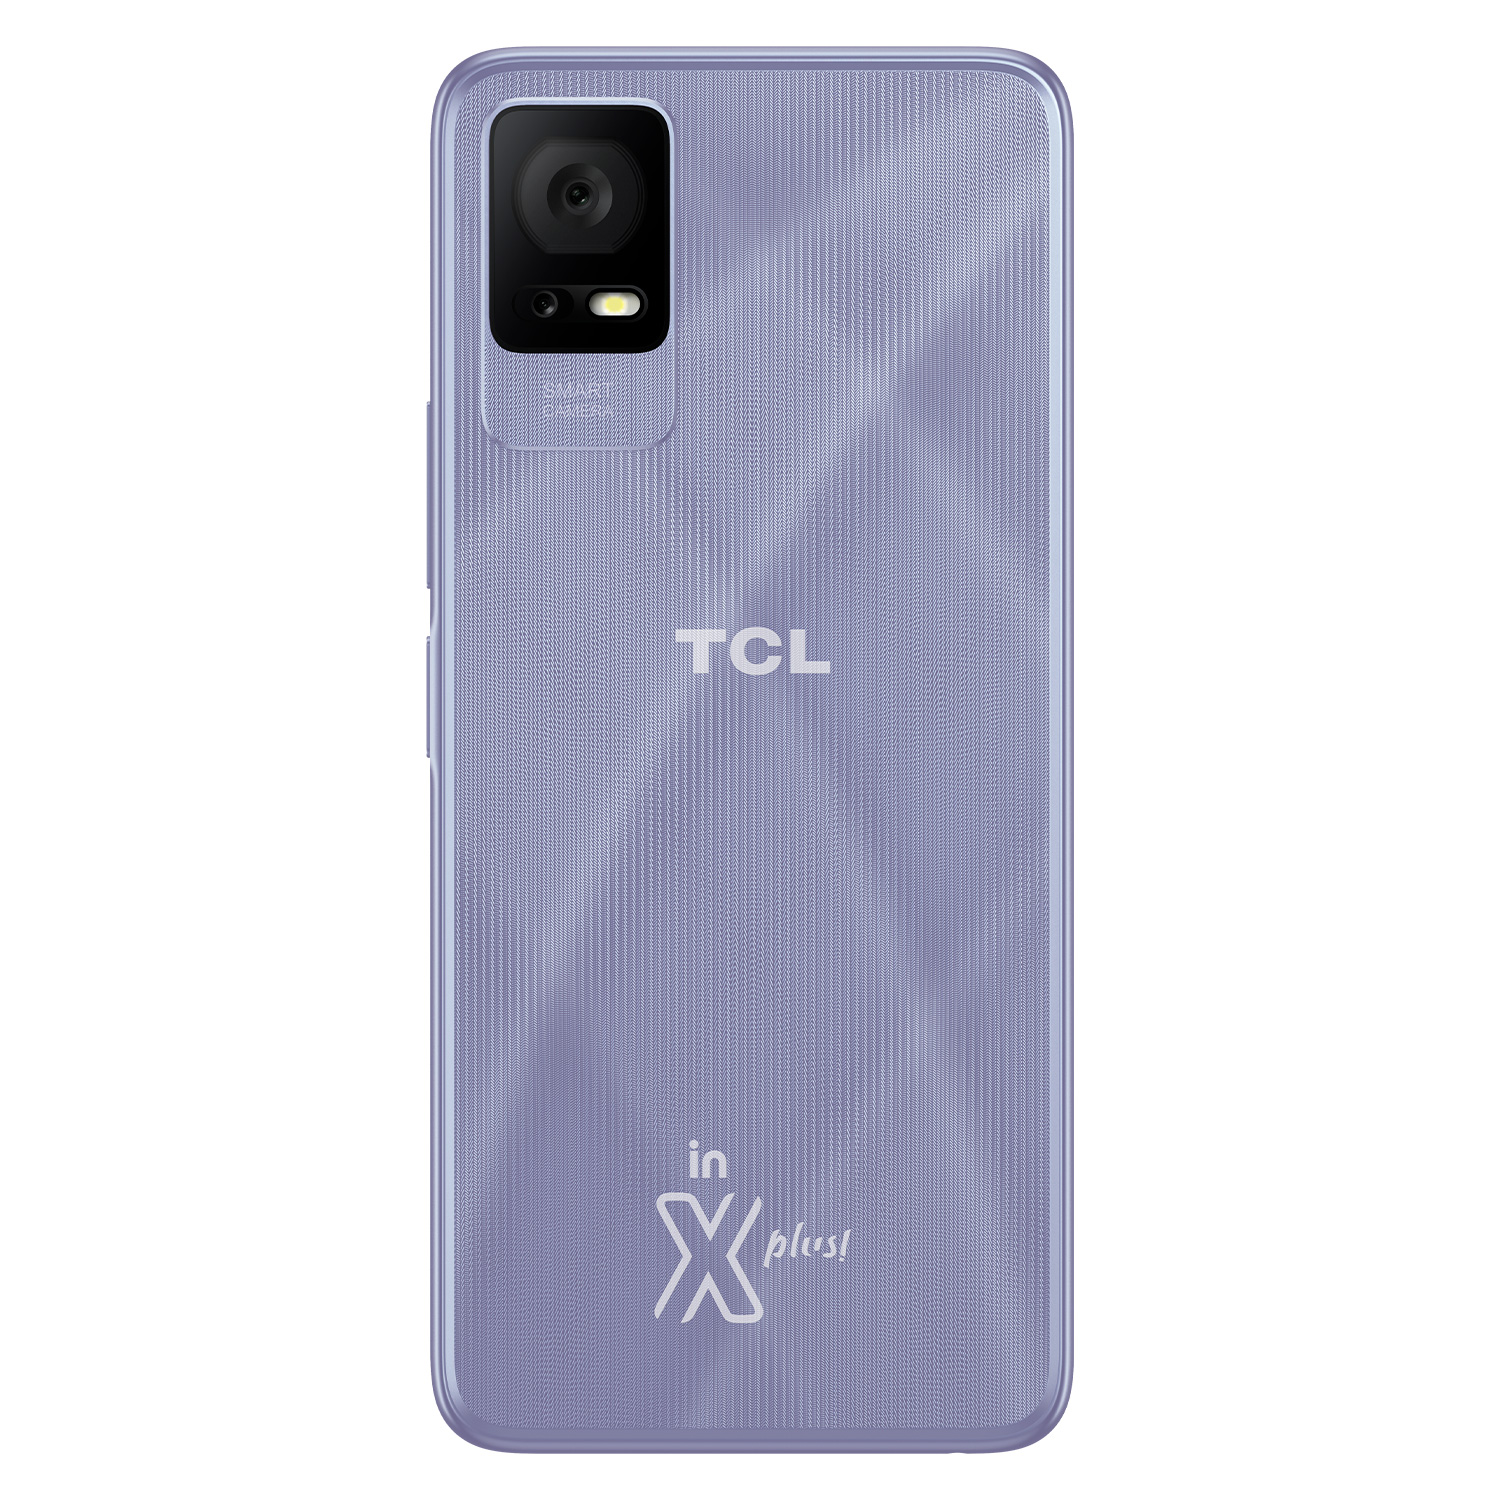 Smartphone TCL 405 Global 64GB 2GB RAM Dual SIM Tela 6.6" - Lavanda